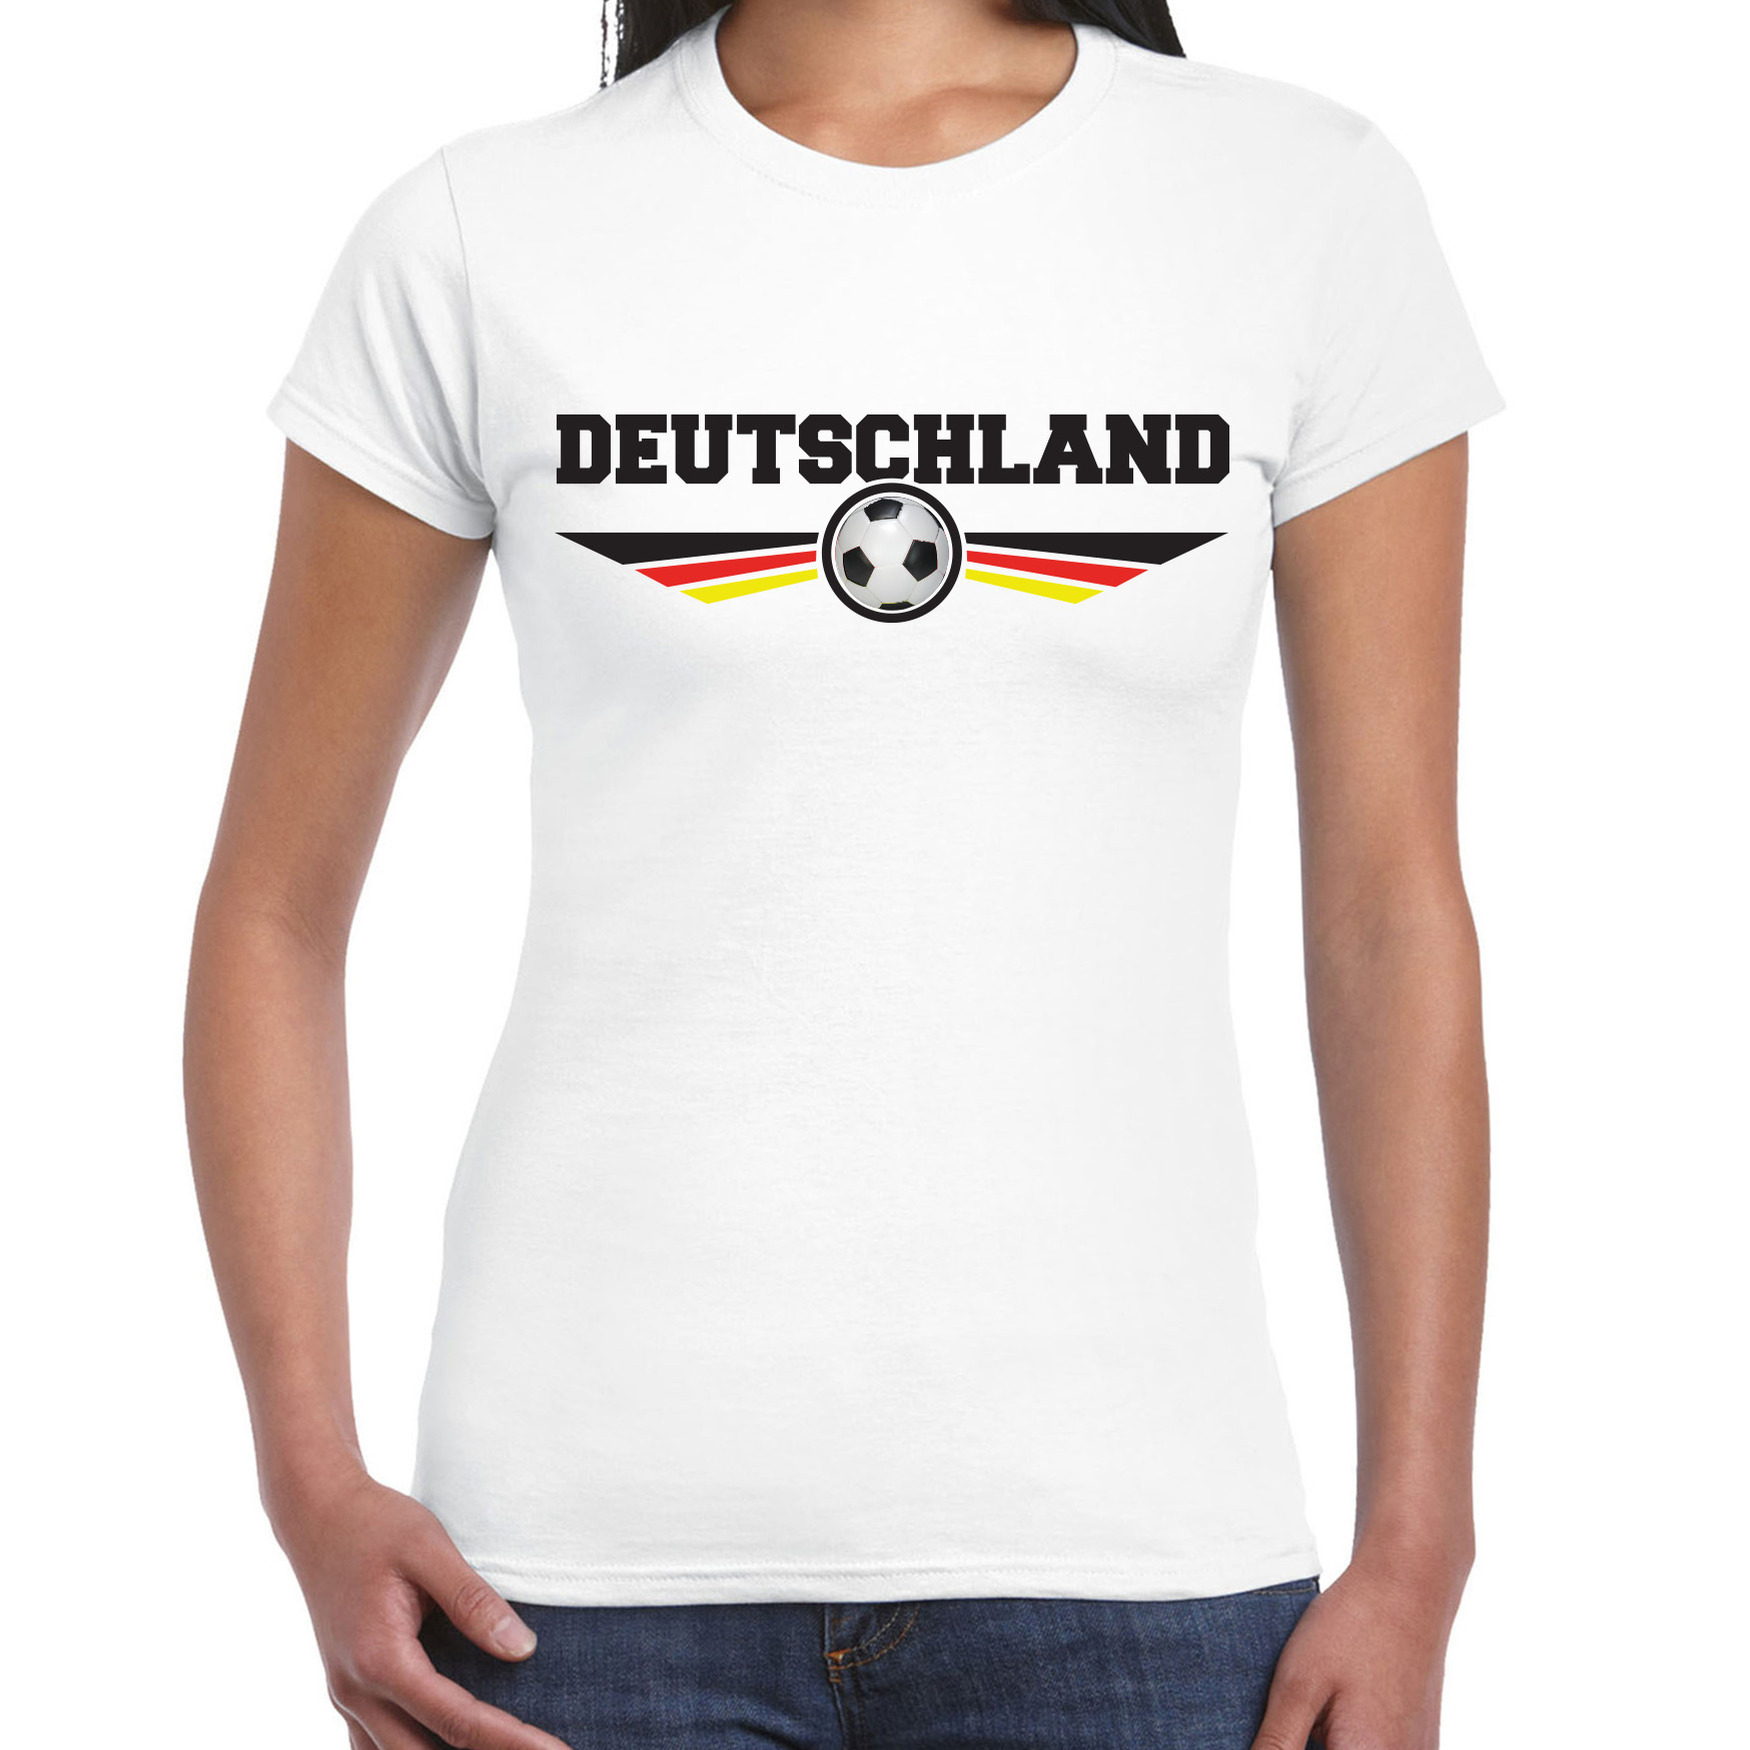 Duitsland-Deutschland landen-voetbal t-shirt wit dames